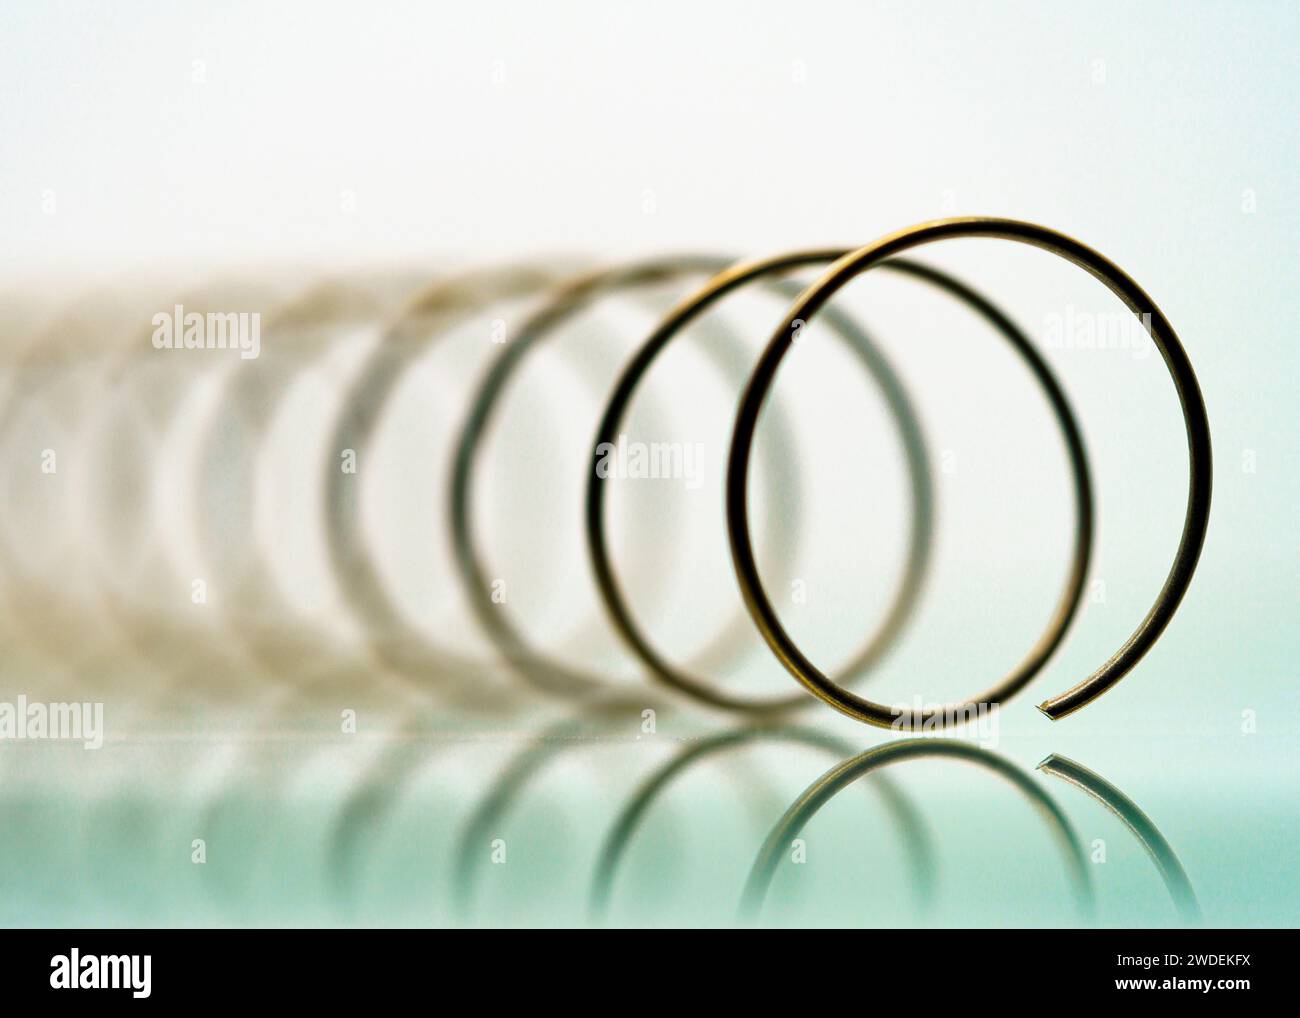 Vista macro angolare di una molla che mostra il suo design tubolare a spirale. Foto Stock